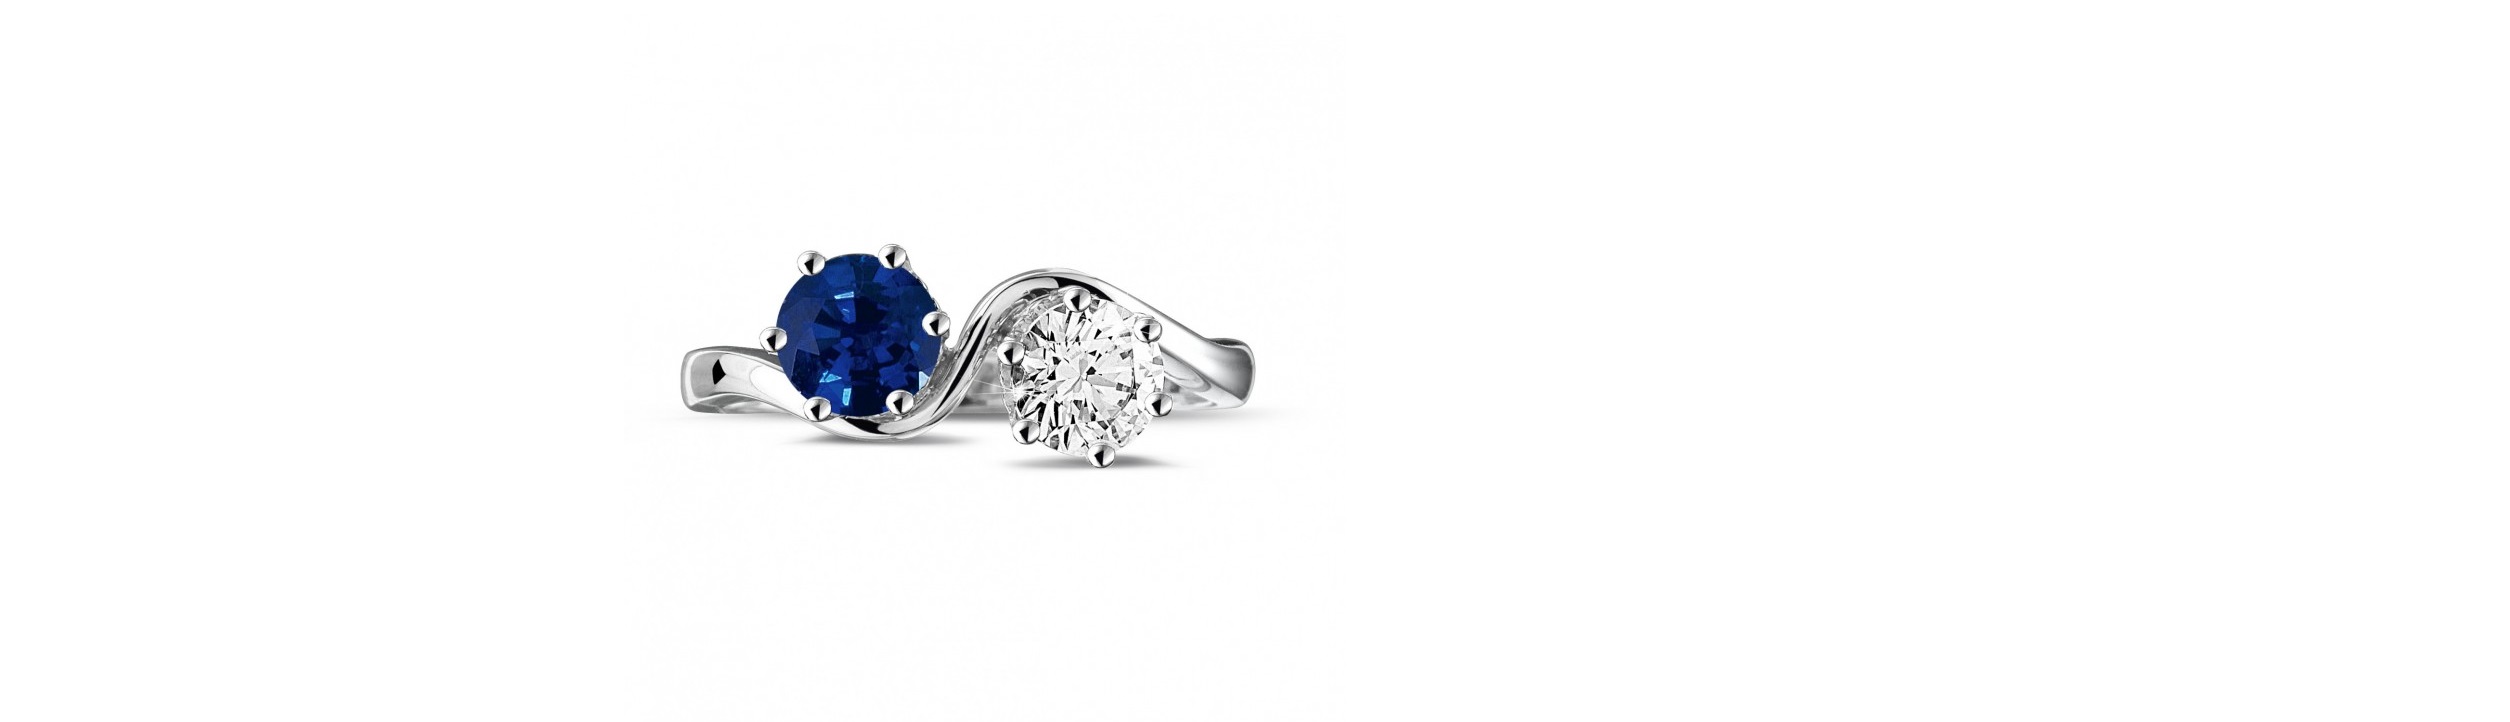 Moet u kiezen voor een diamanten verlovingsring of één met saffier?